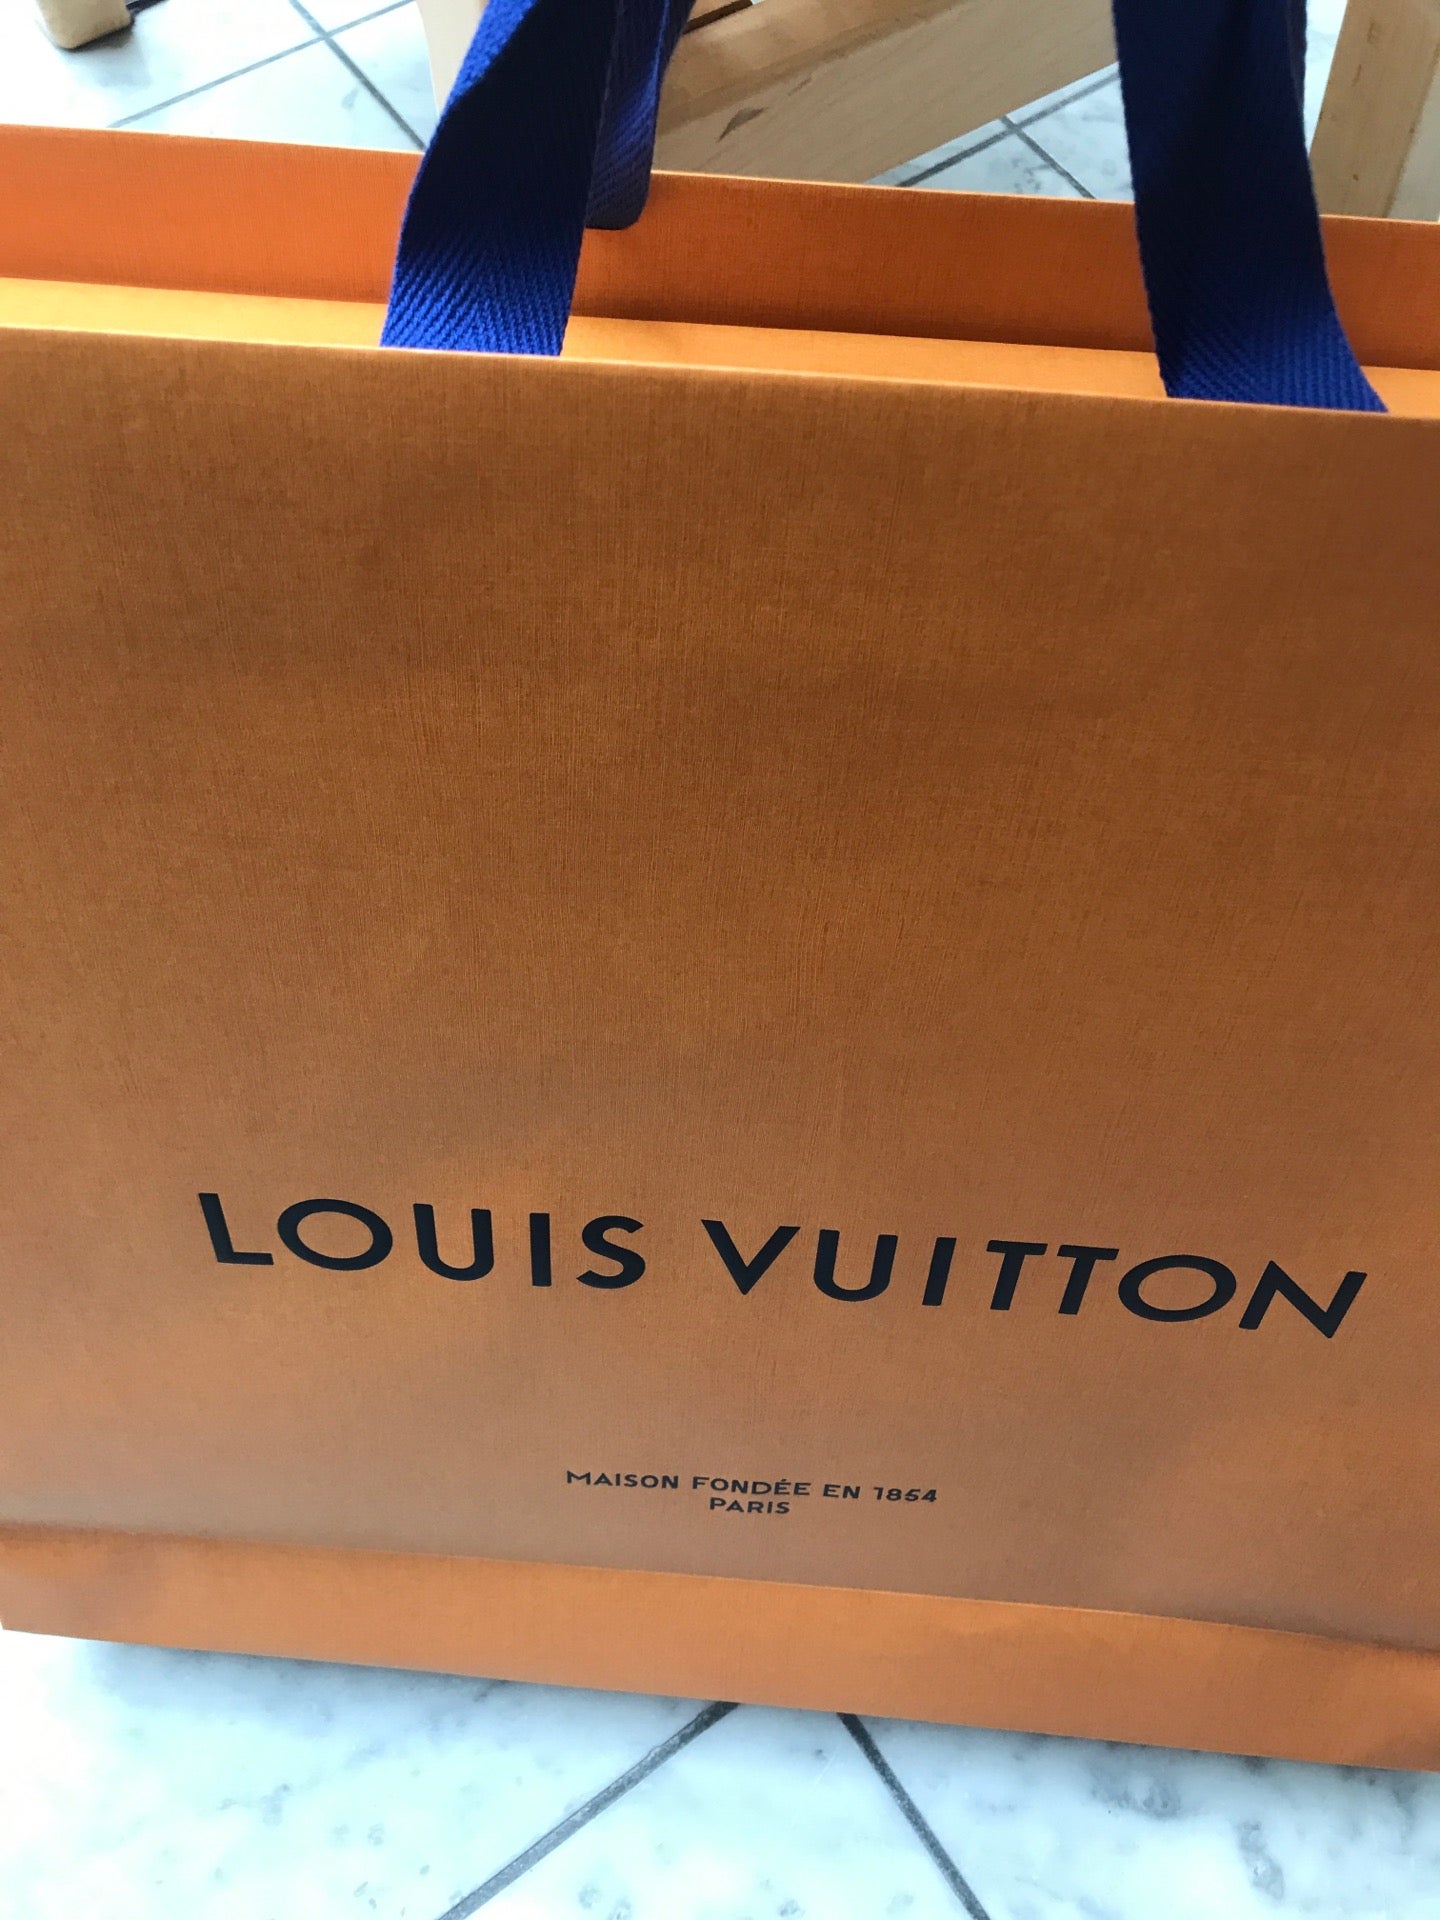 Louis Vuitton Nashville shopping spree 